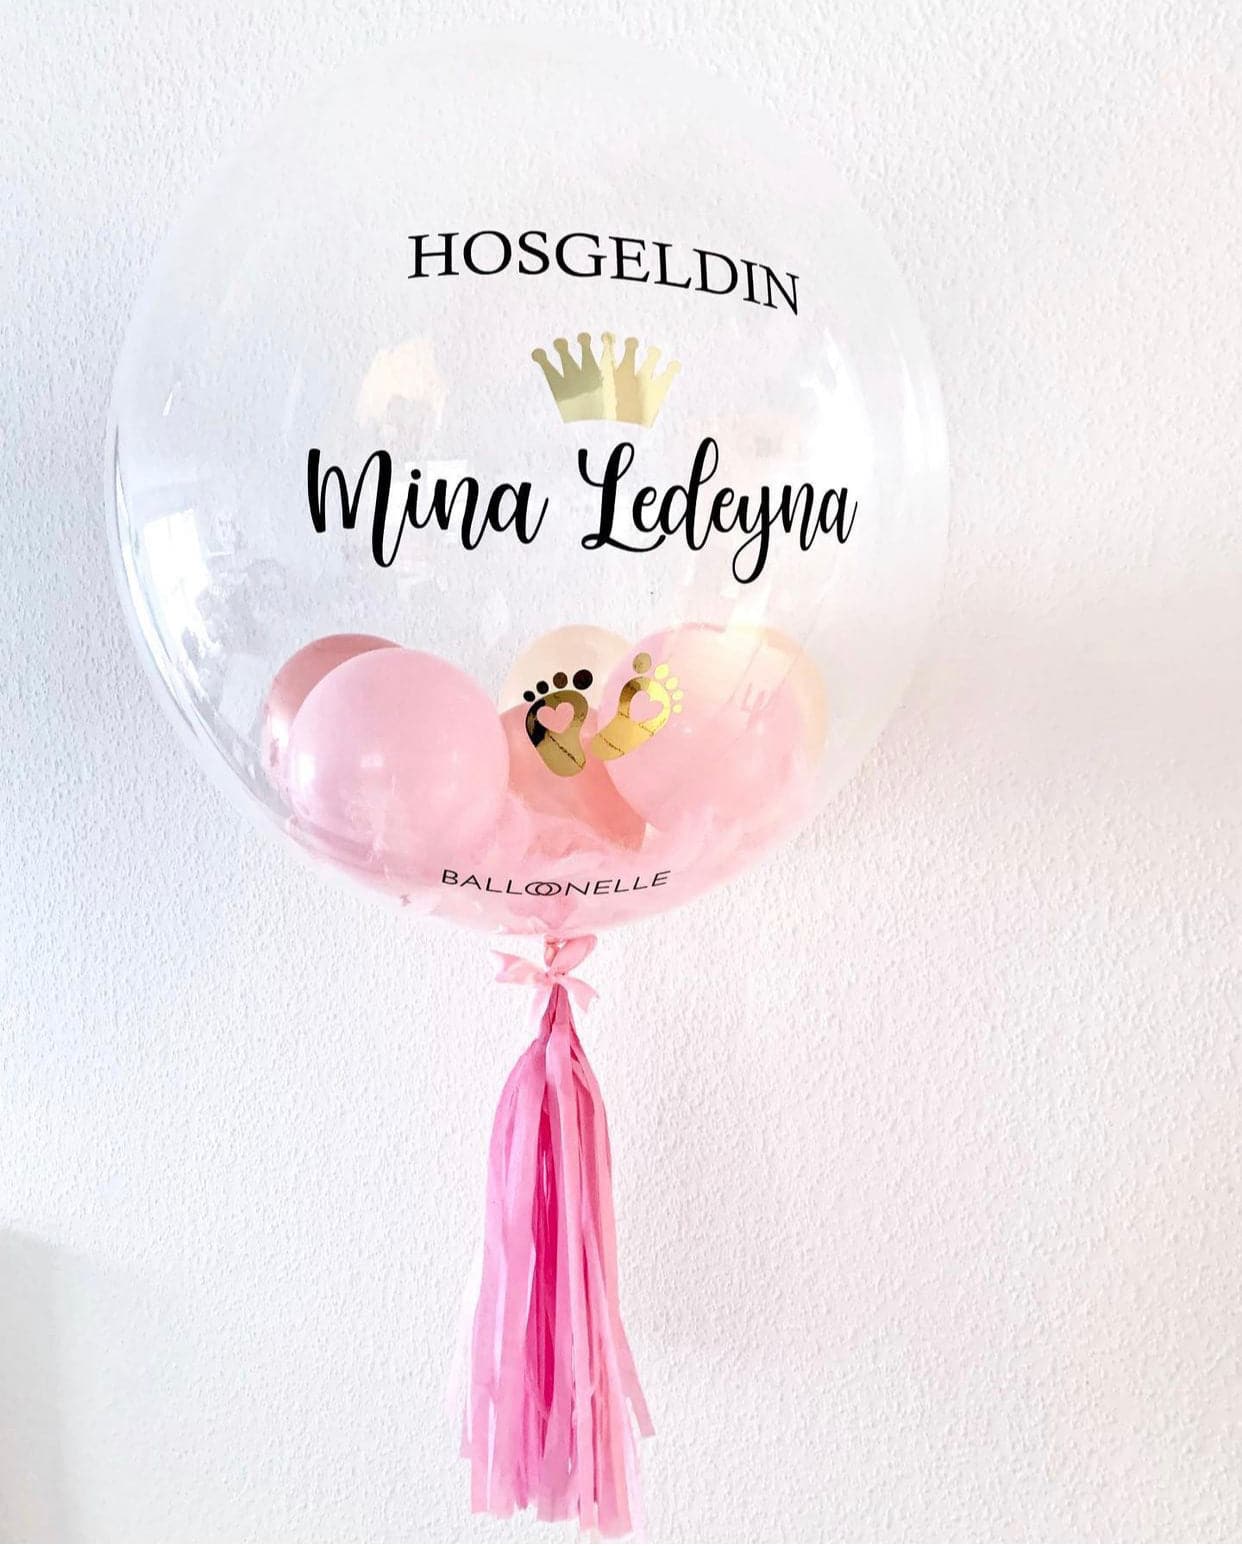 Hosgeldin Baby Girl Designer Ballon - BALLOONELLE